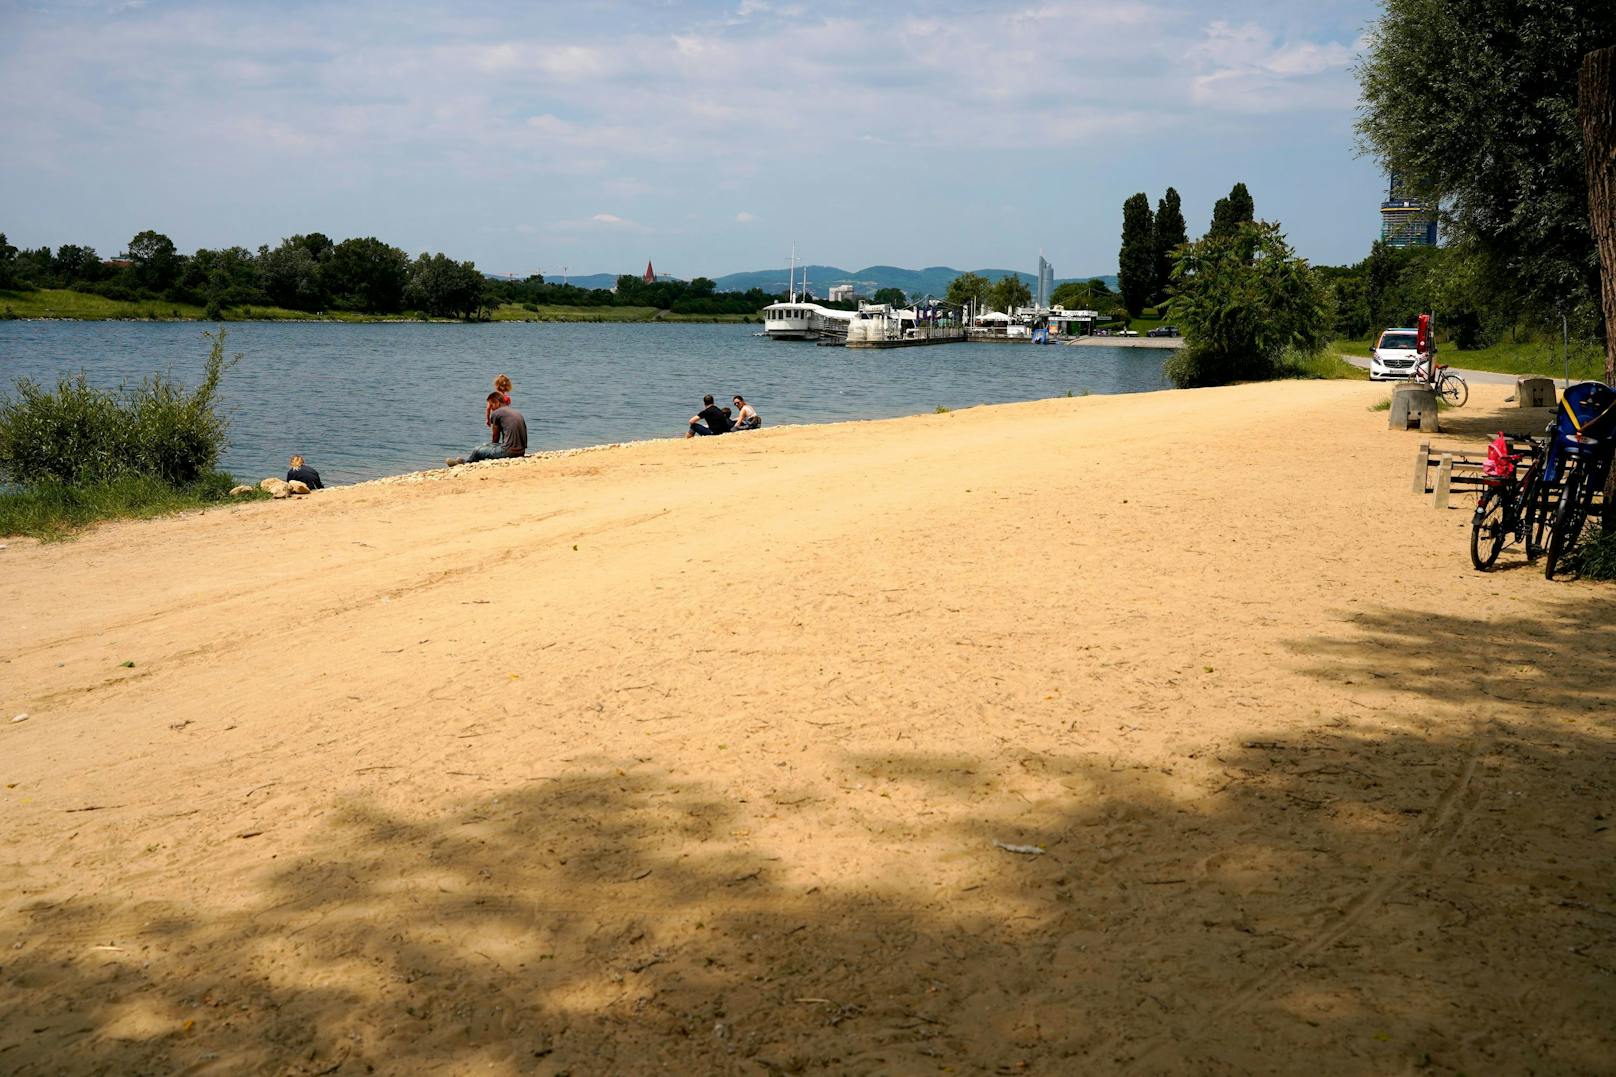 Mädchen (7) ging in Donau unter – Mann als Lebensretter